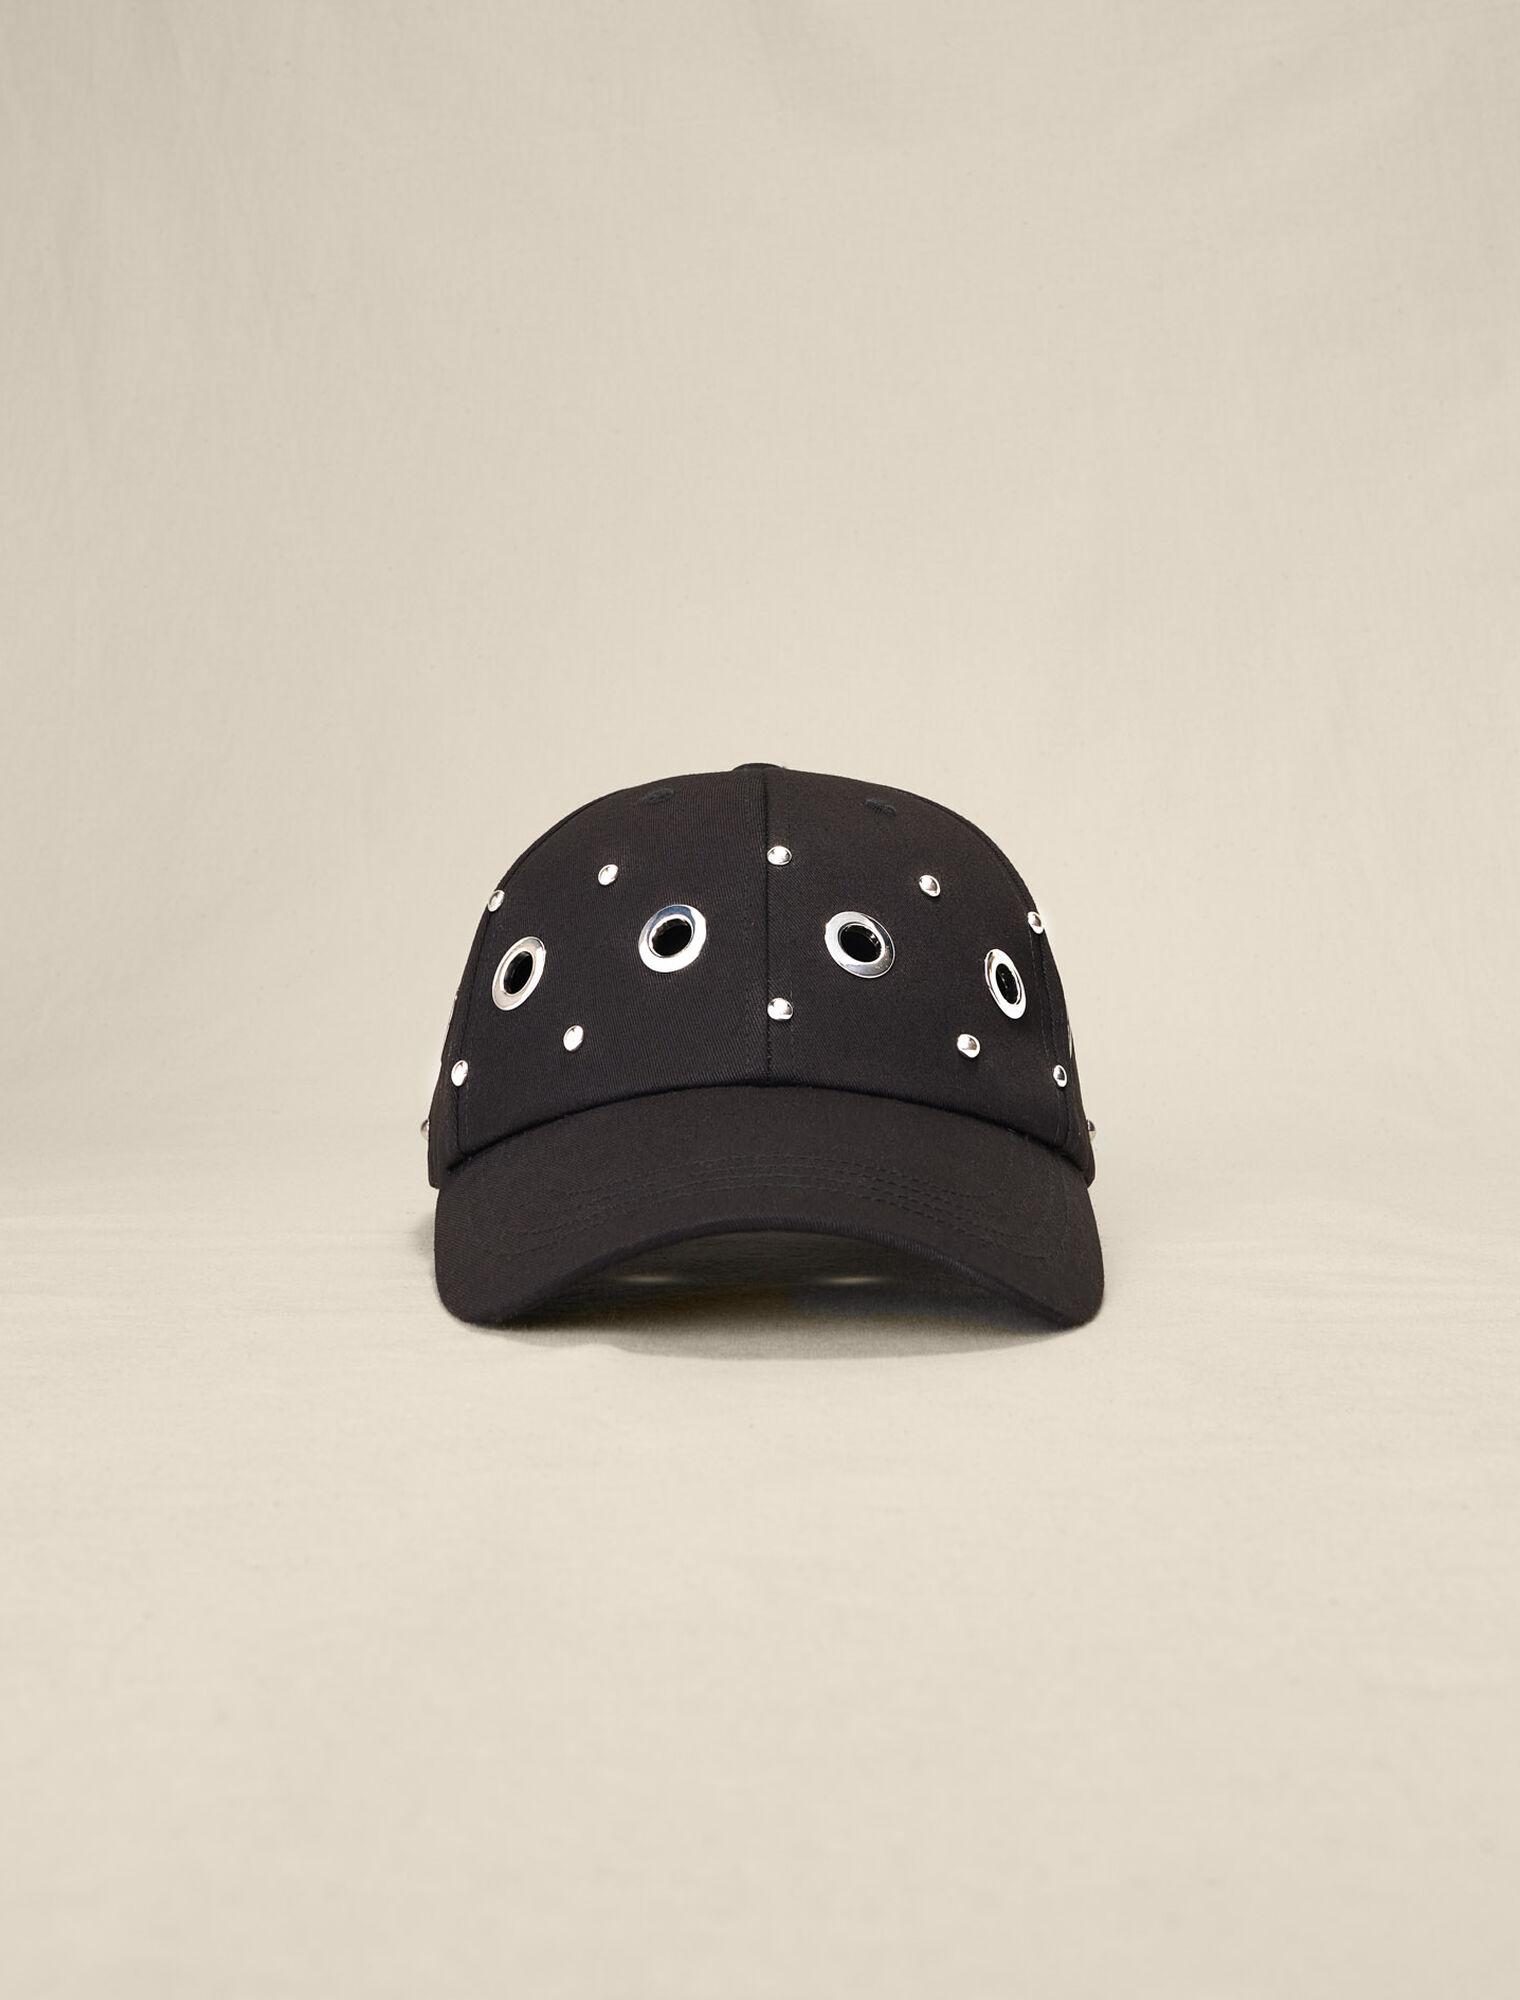 Studded baseball cap